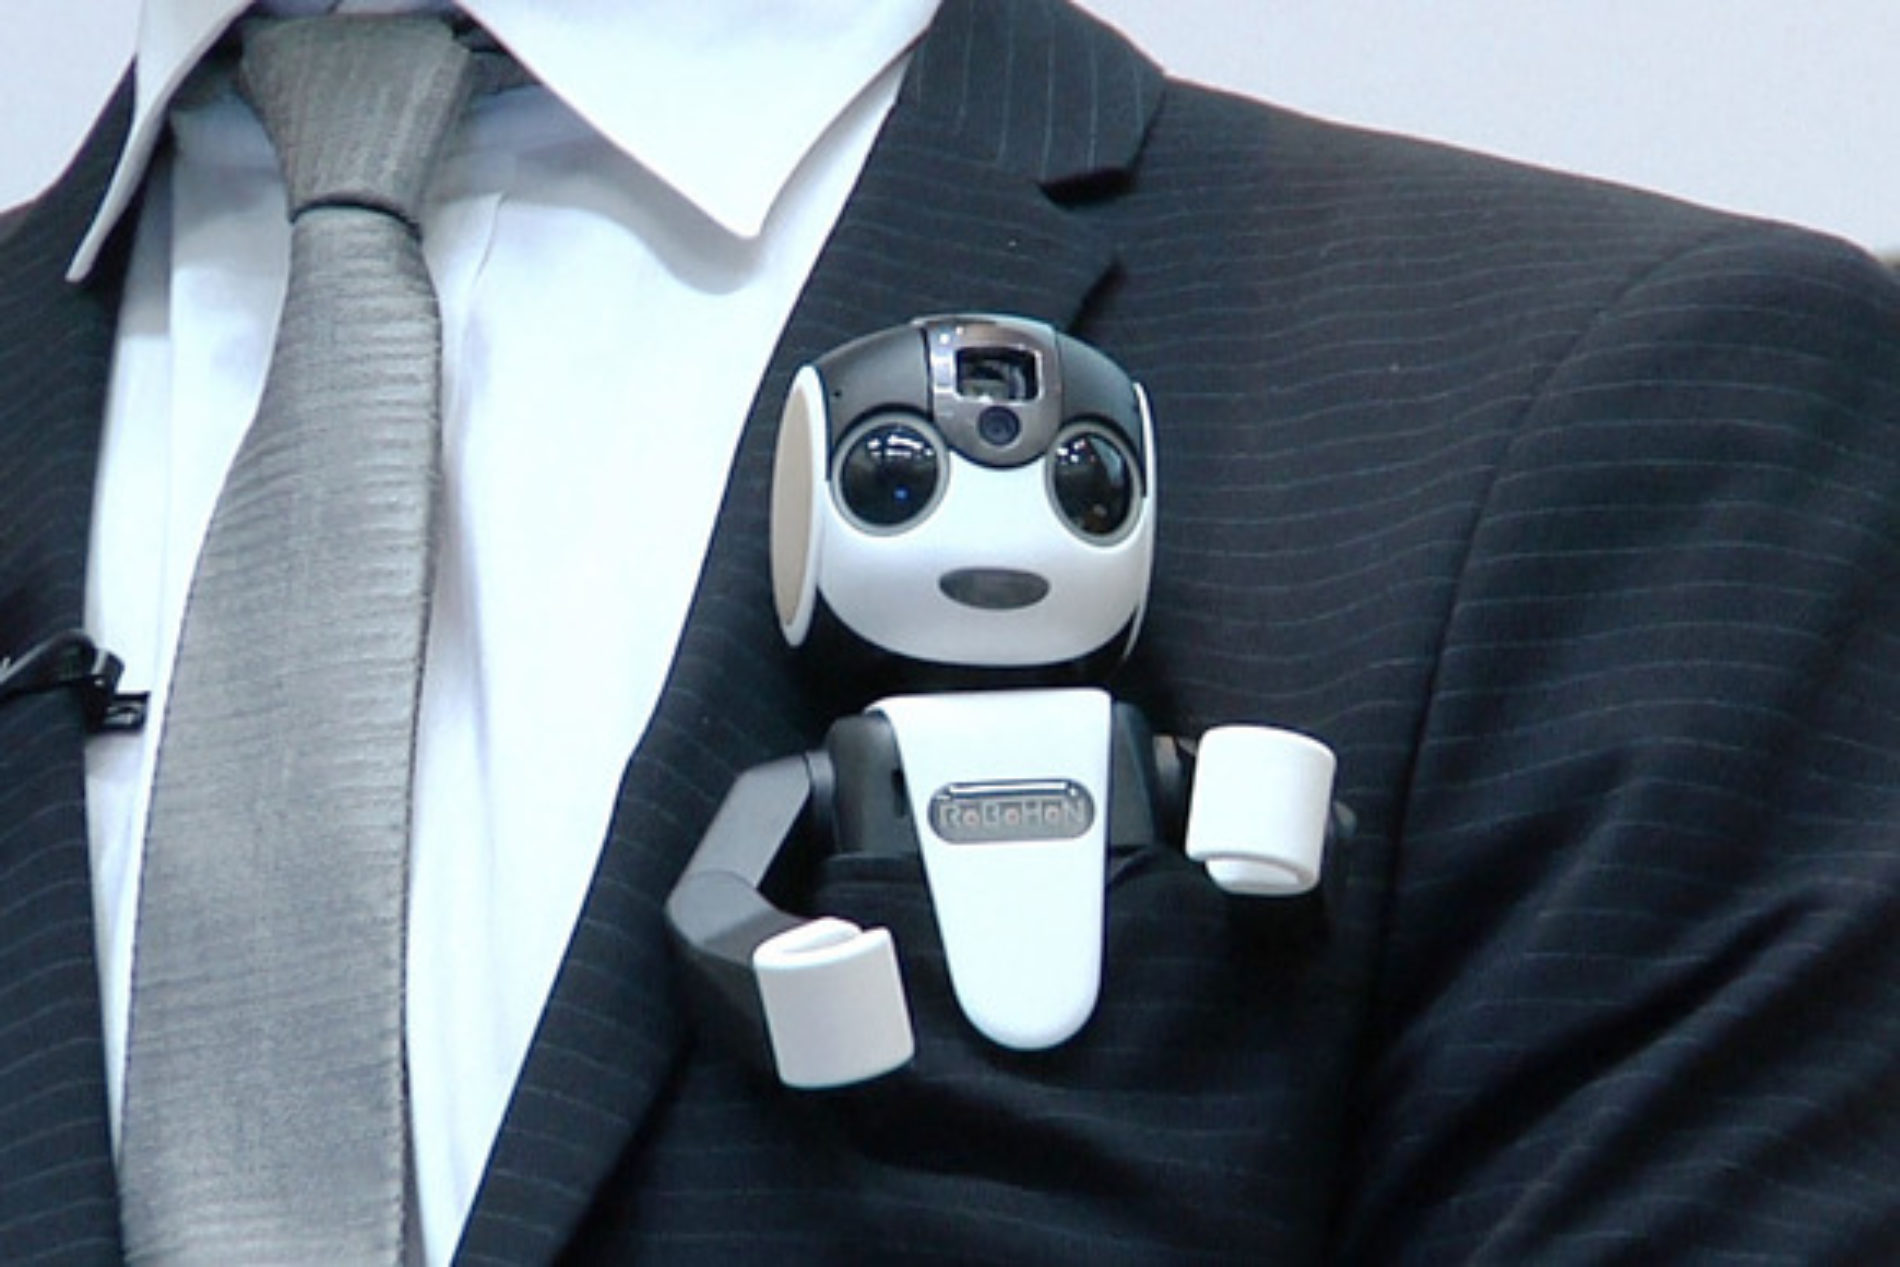 RoboHon. Cute robot – smartfon